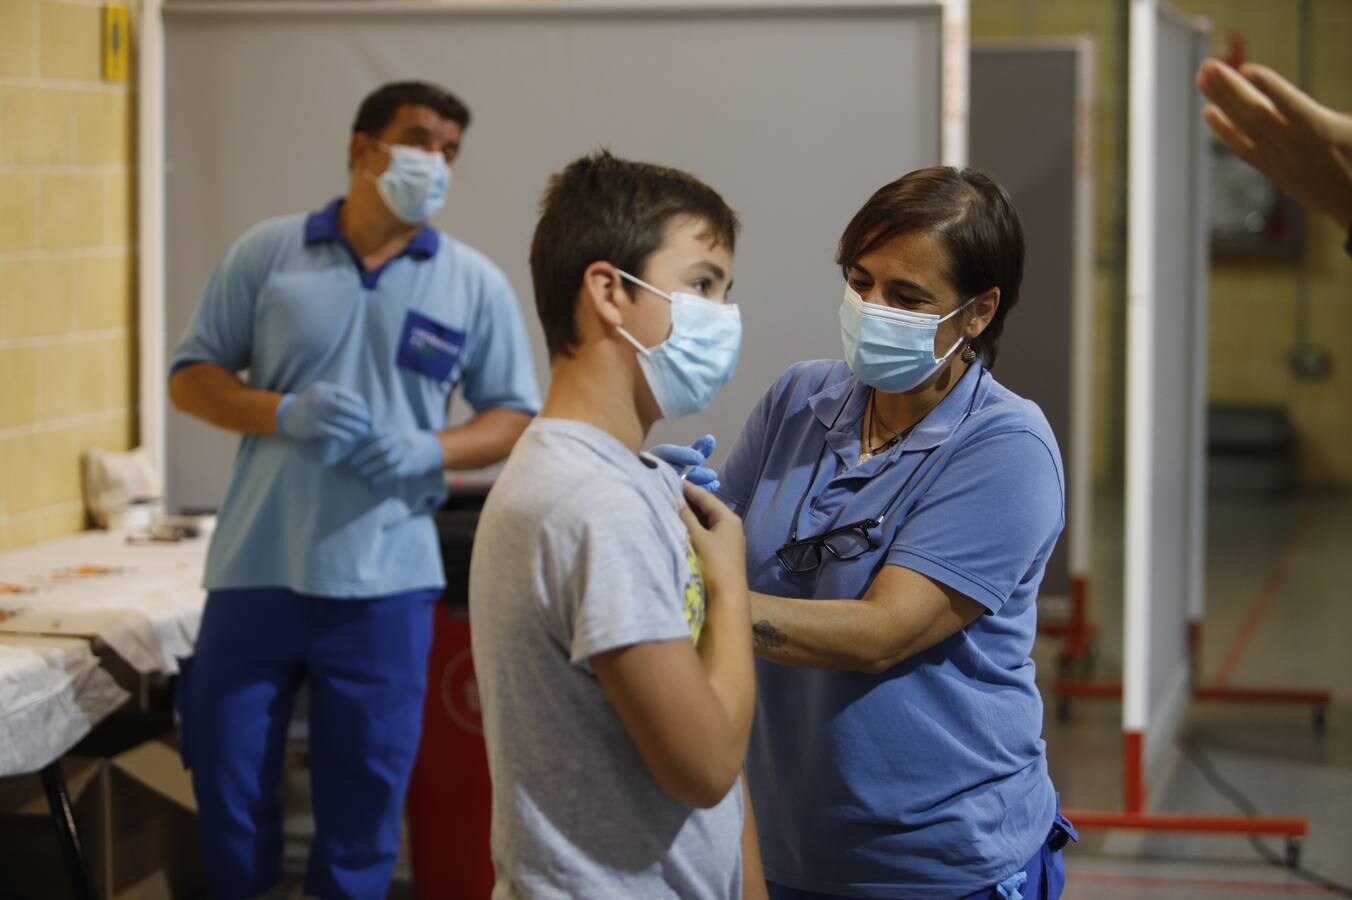 Vacunación exprés Covid en Córdoba para los rezagados, en imágenes